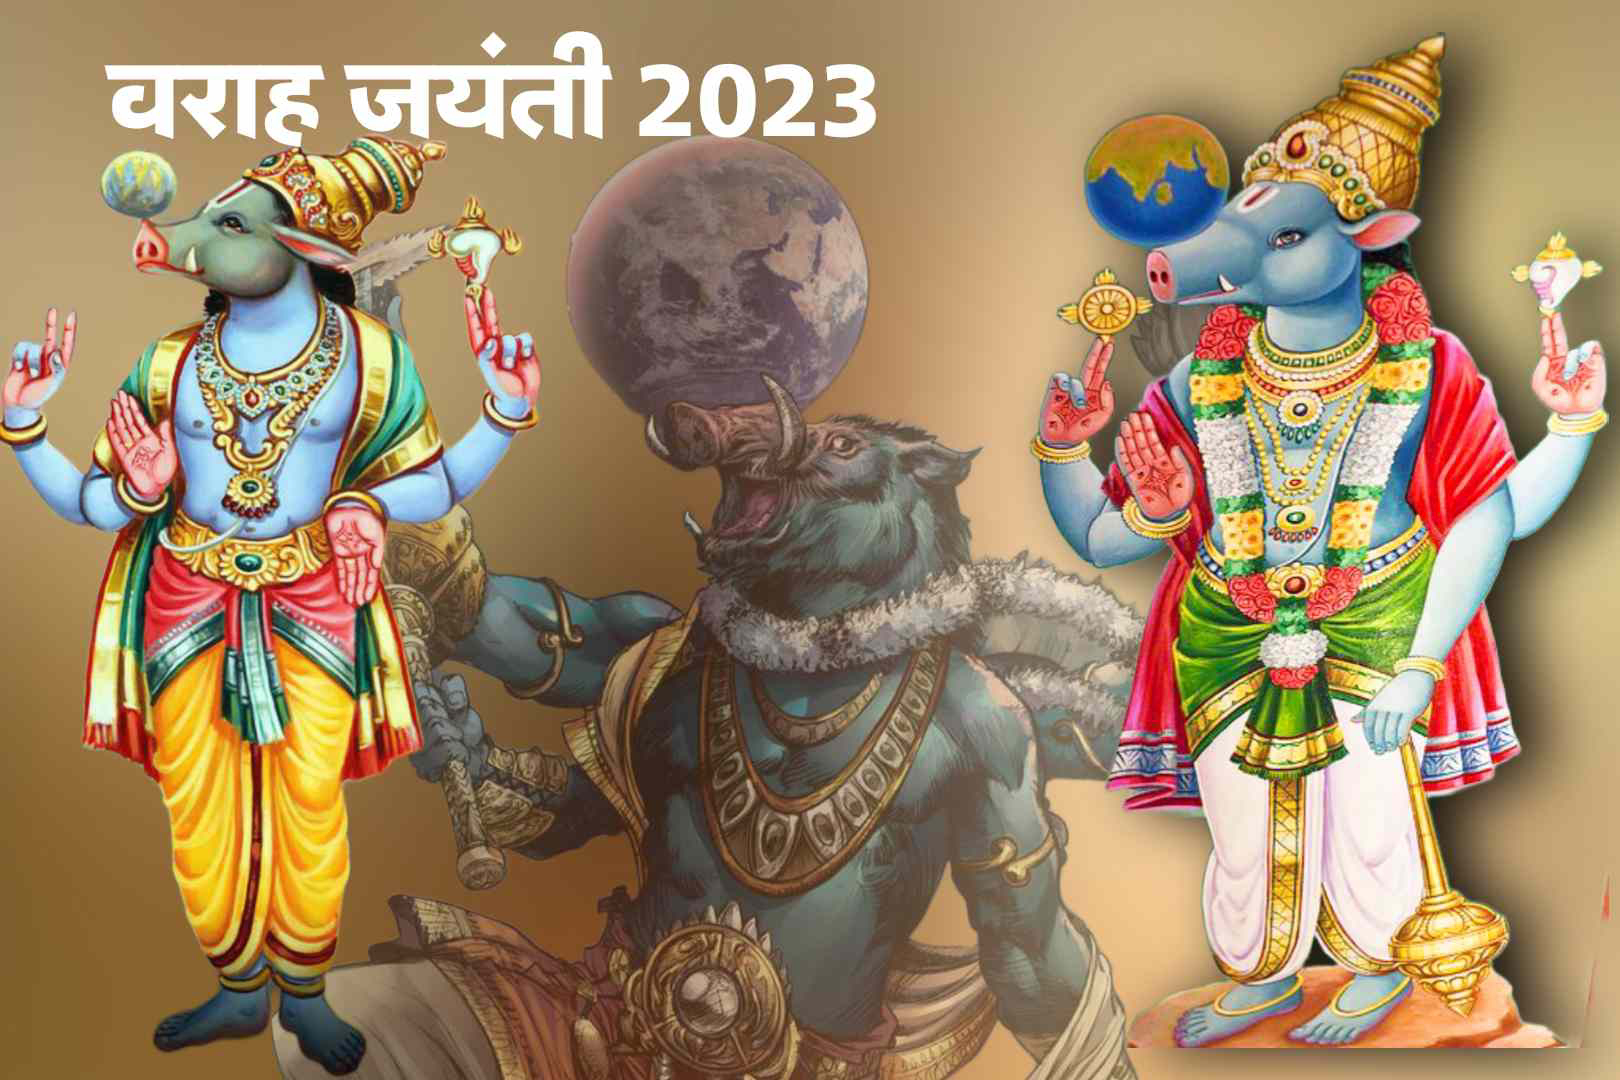 वराह जयंती 2022 | शुभेछा बॅनर| वराह अवतार कथा वाचा | Varah jayanti 2023